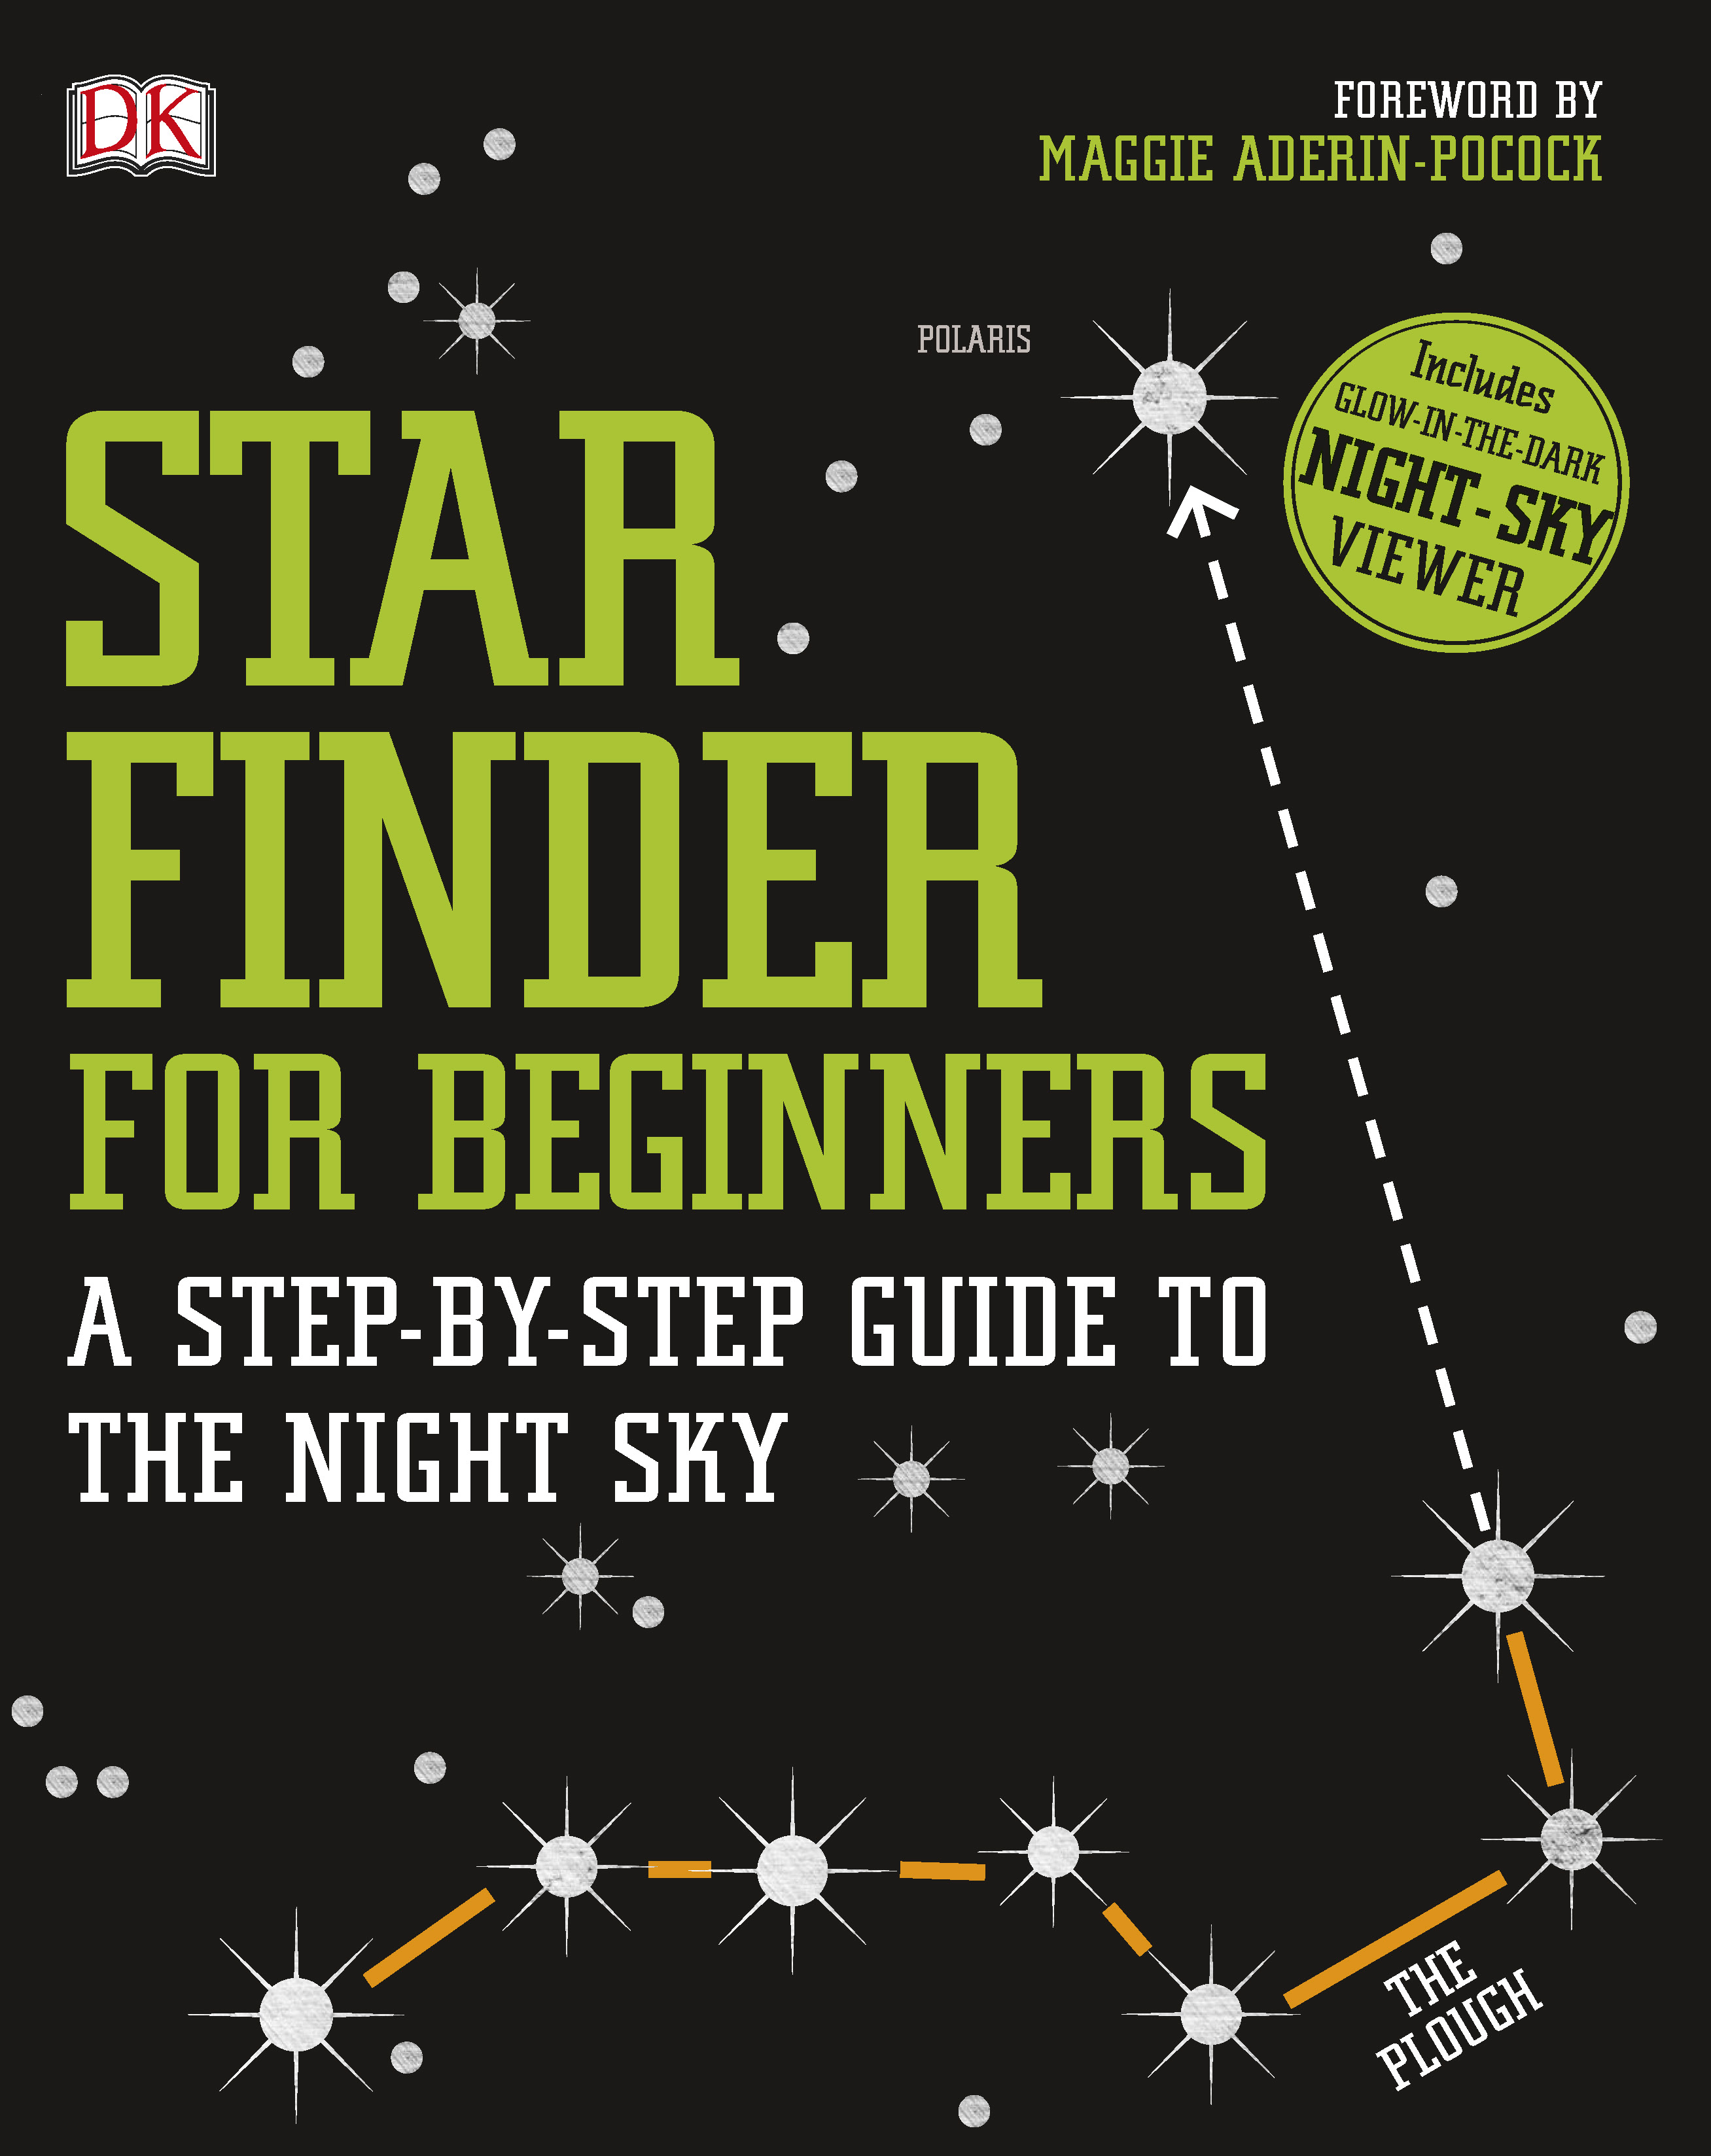 StarFinder for Beginners jacket